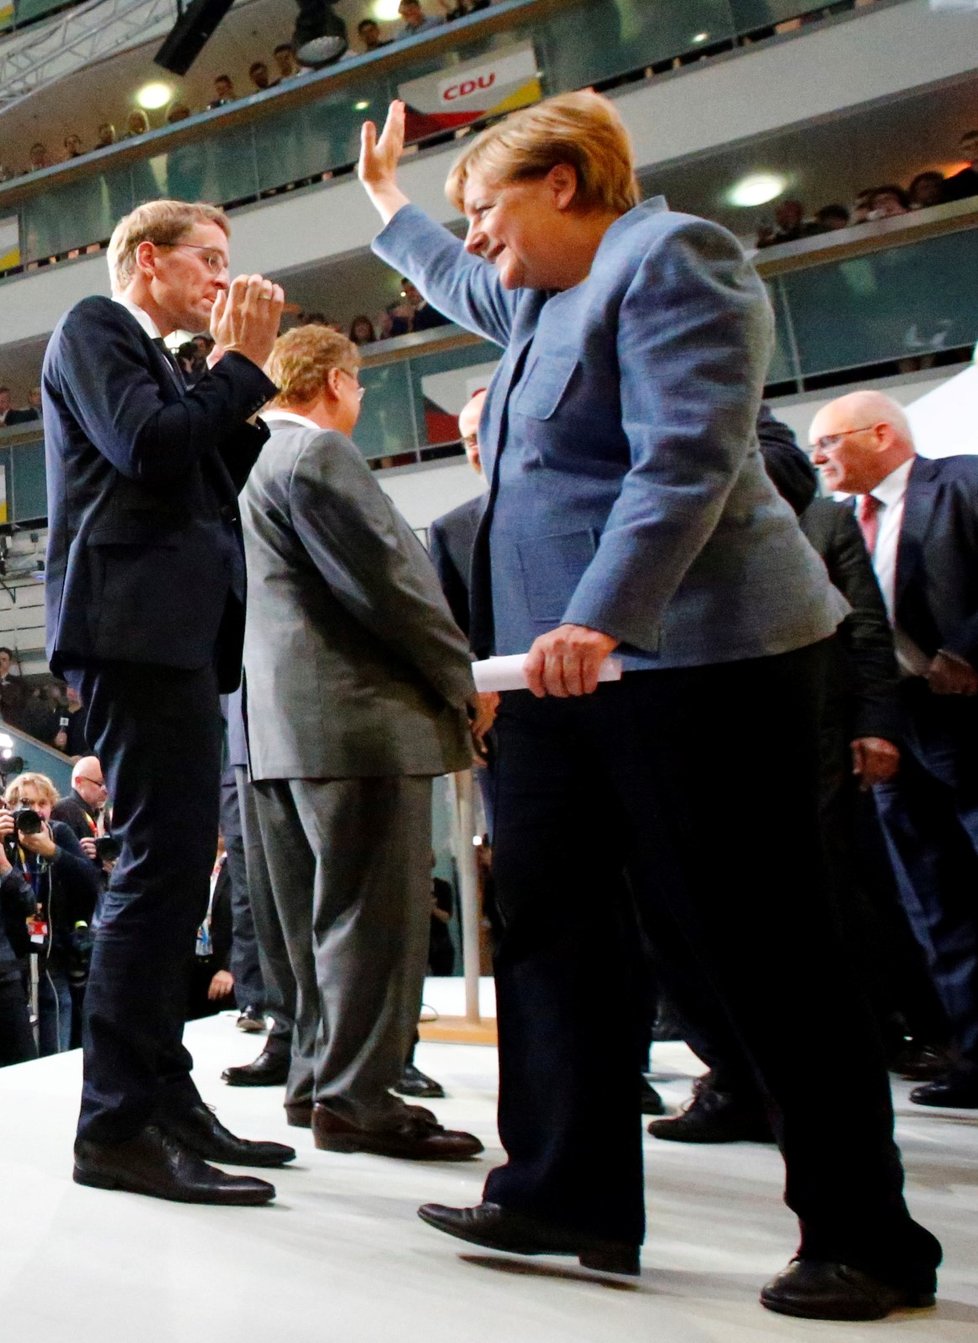 Angela Merkelová opouští pódium po svém vítězném projevu